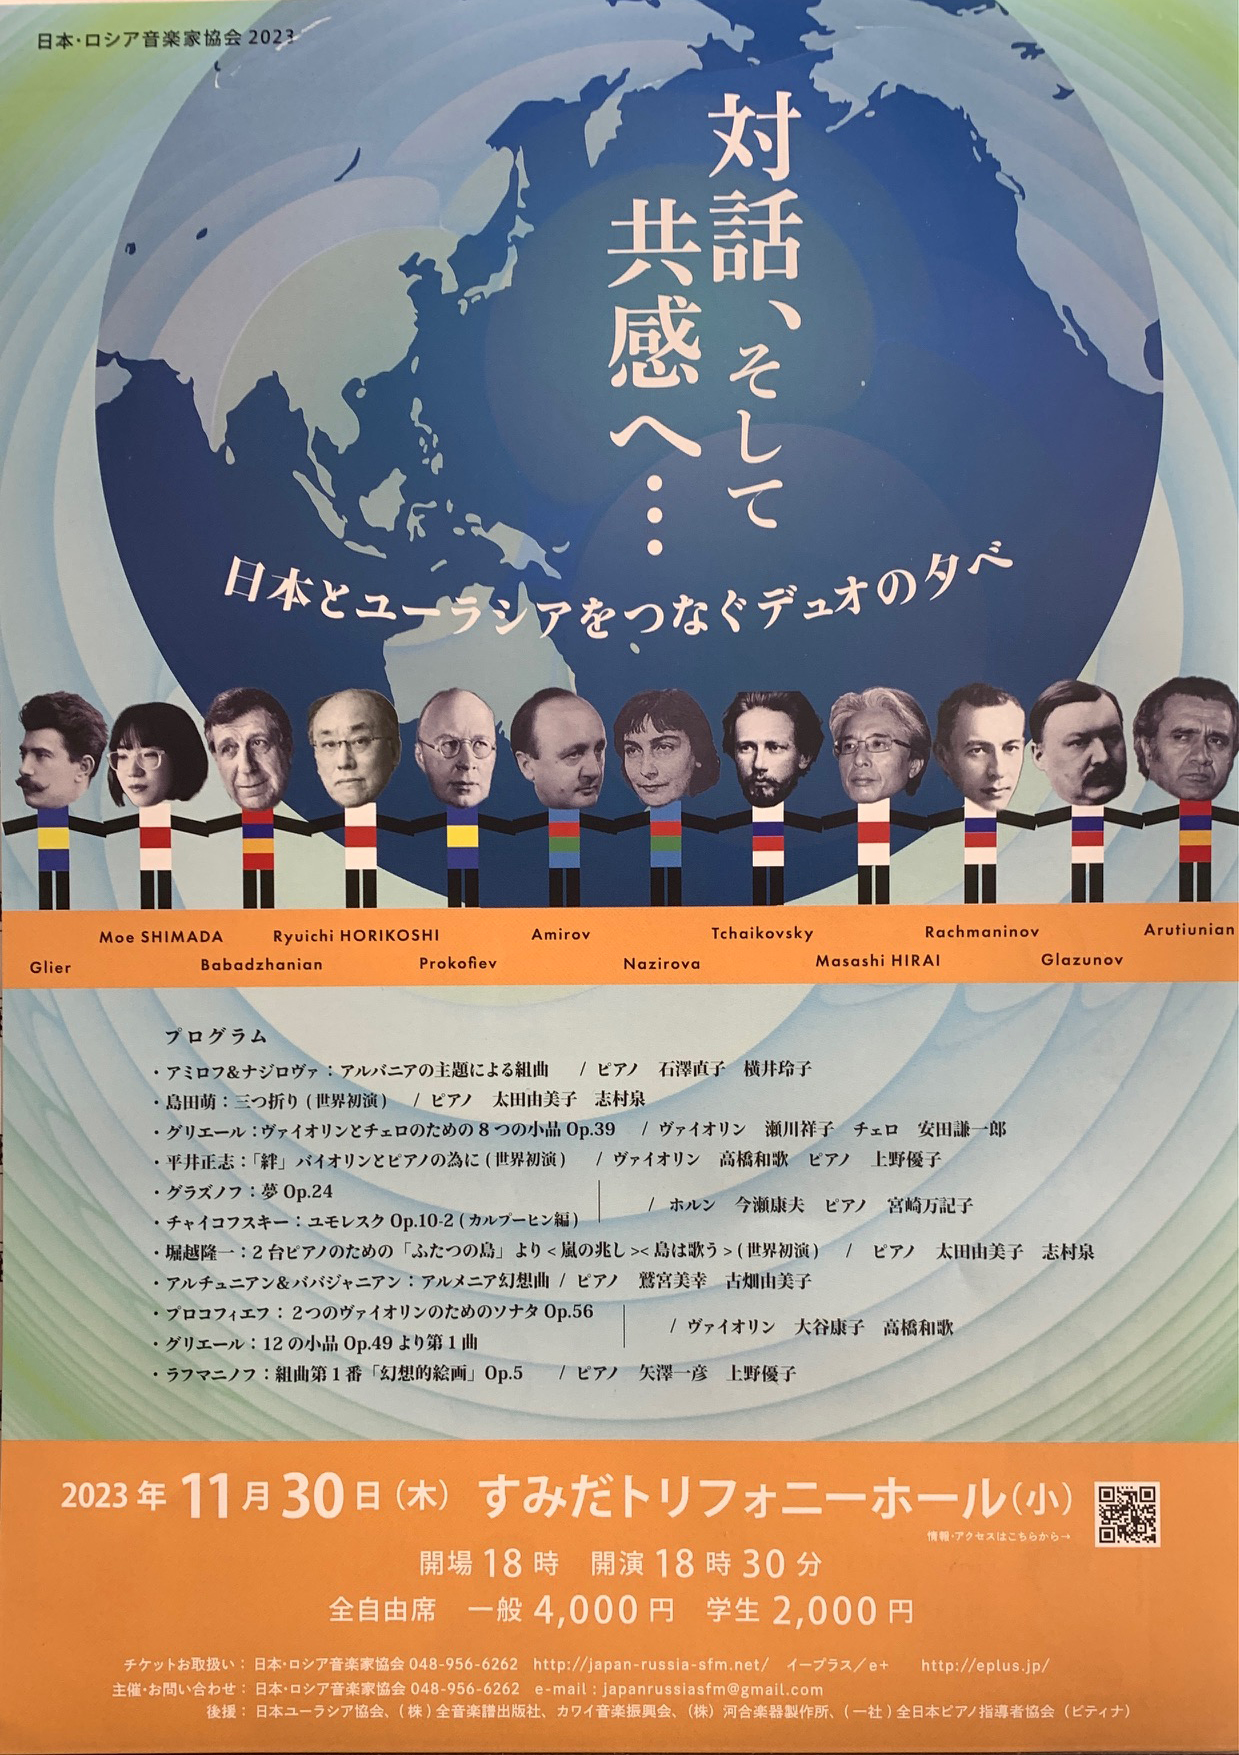 2023年11月30日「対話、そして共感へ...-日本とユーラシアをつなぐデュオの夕べ-」のポスター